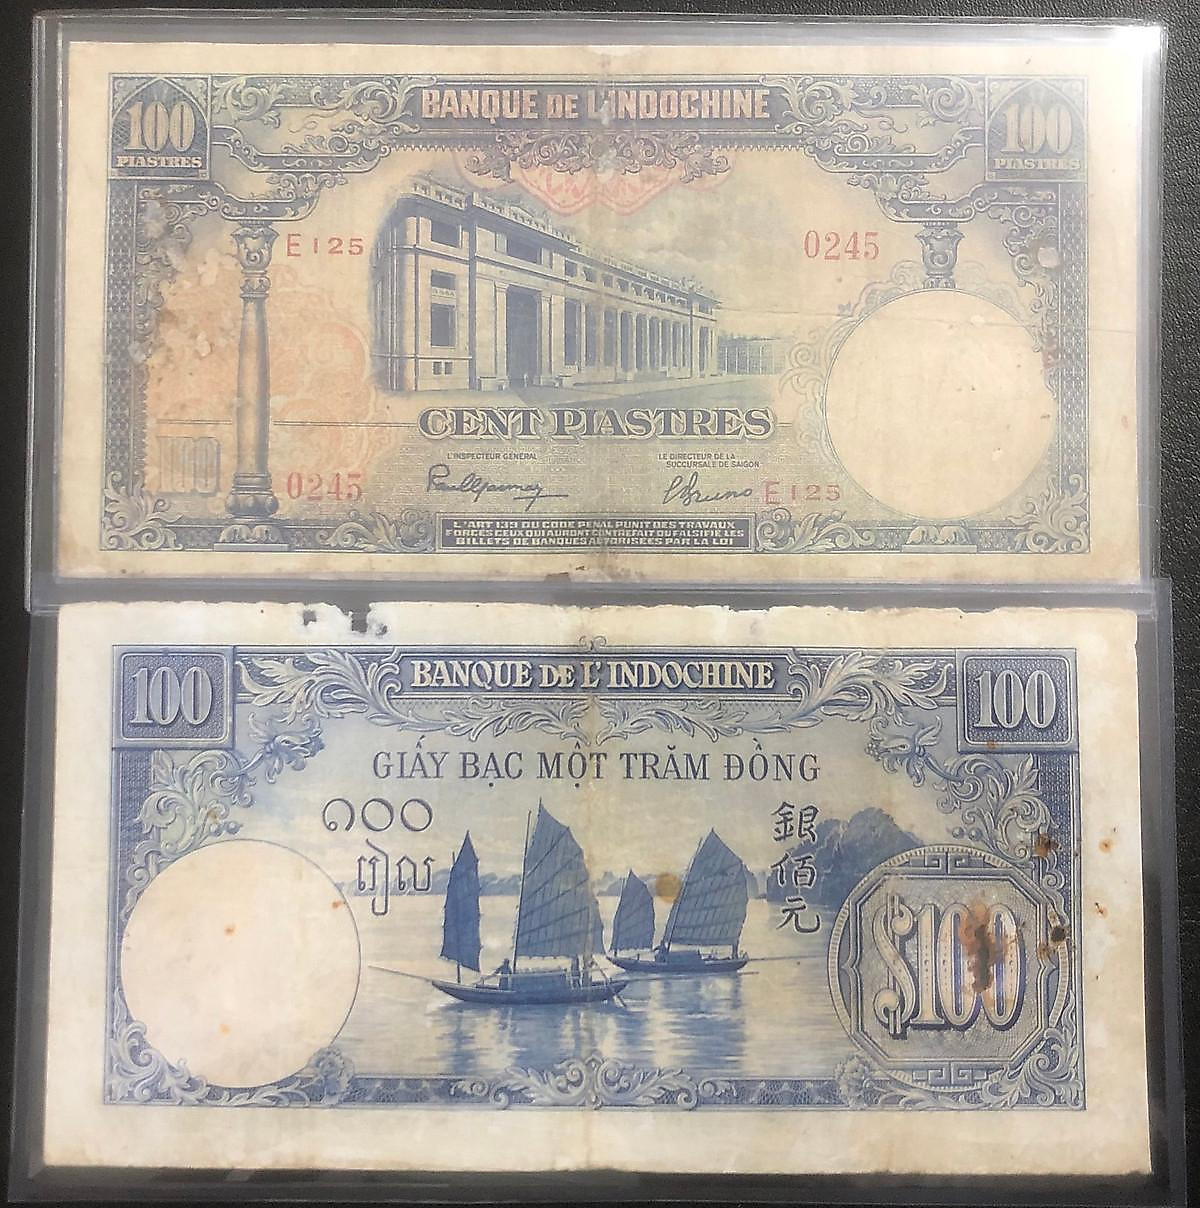 Tiền đồng Dương - một loại tiền tuy không còn sử dụng nhưng vẫn mang trong mình giá trị lịch sử và văn hóa. Hình ảnh sẽ đưa bạn trở lại quá khứ để cảm nhận sự phát triển kinh tế và thương mại của các quốc gia Đông Nam Á.